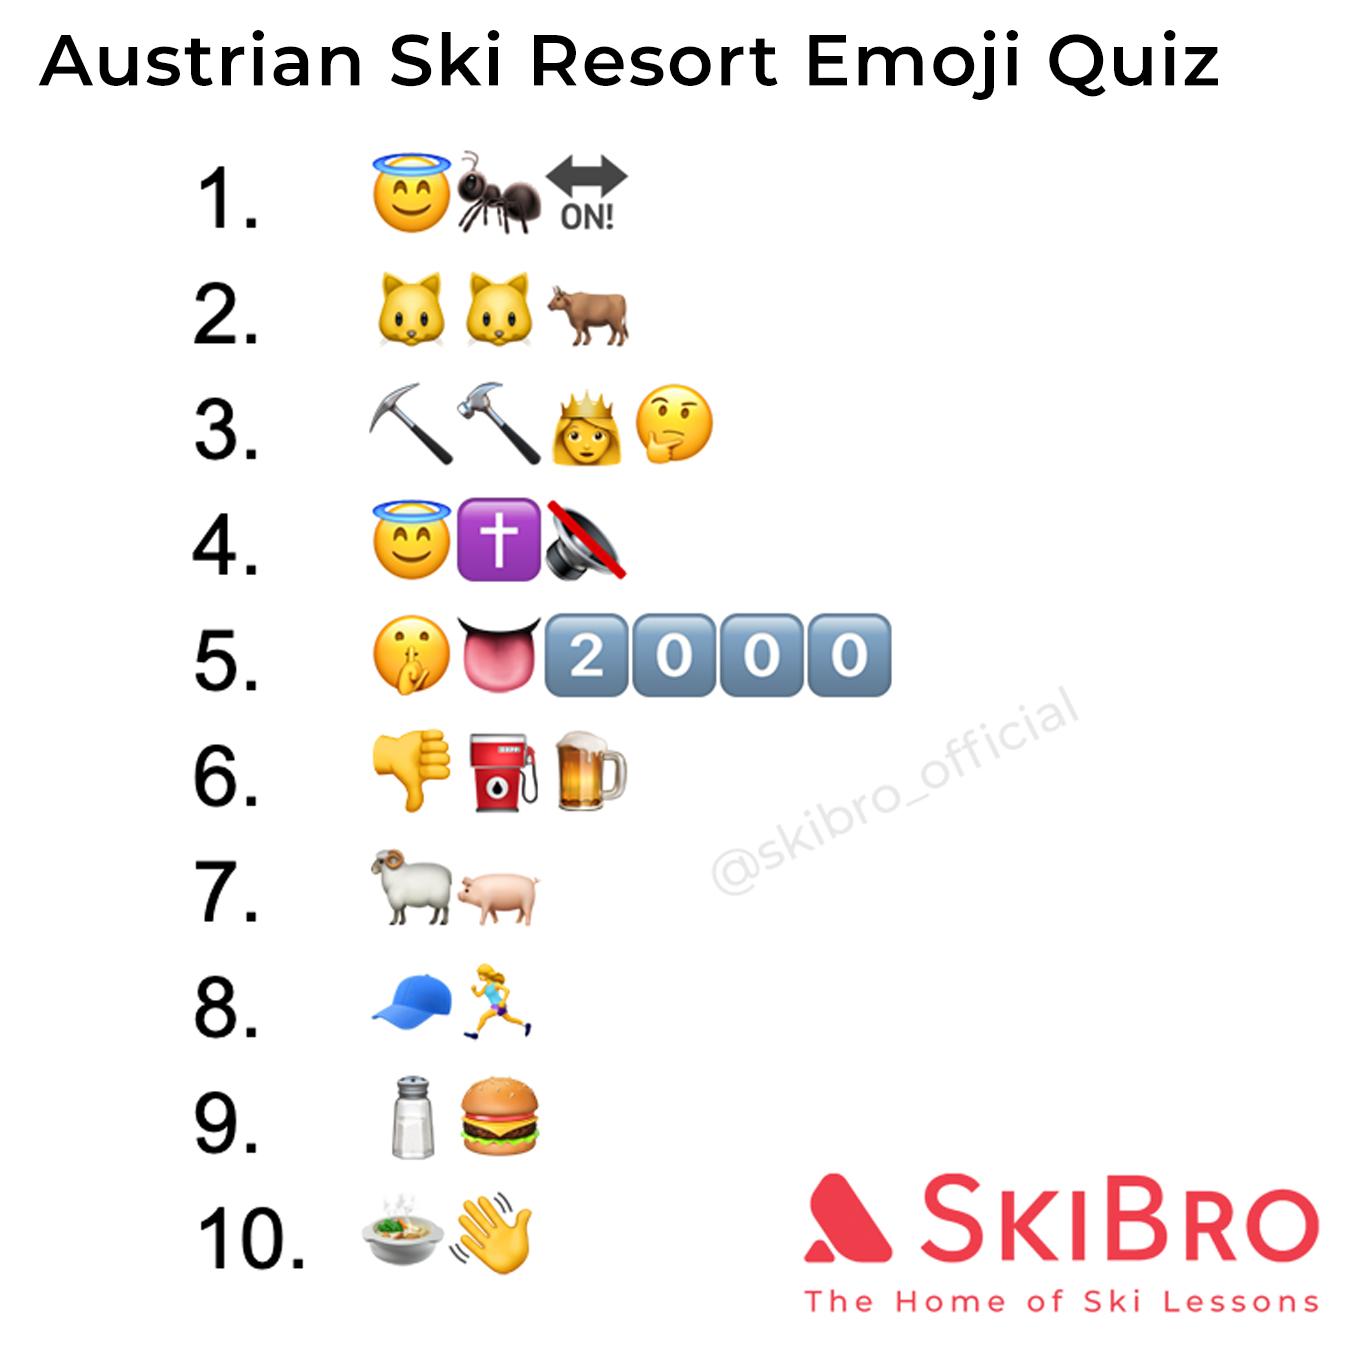 emoji quiz of 10 popular austrian ski resorts